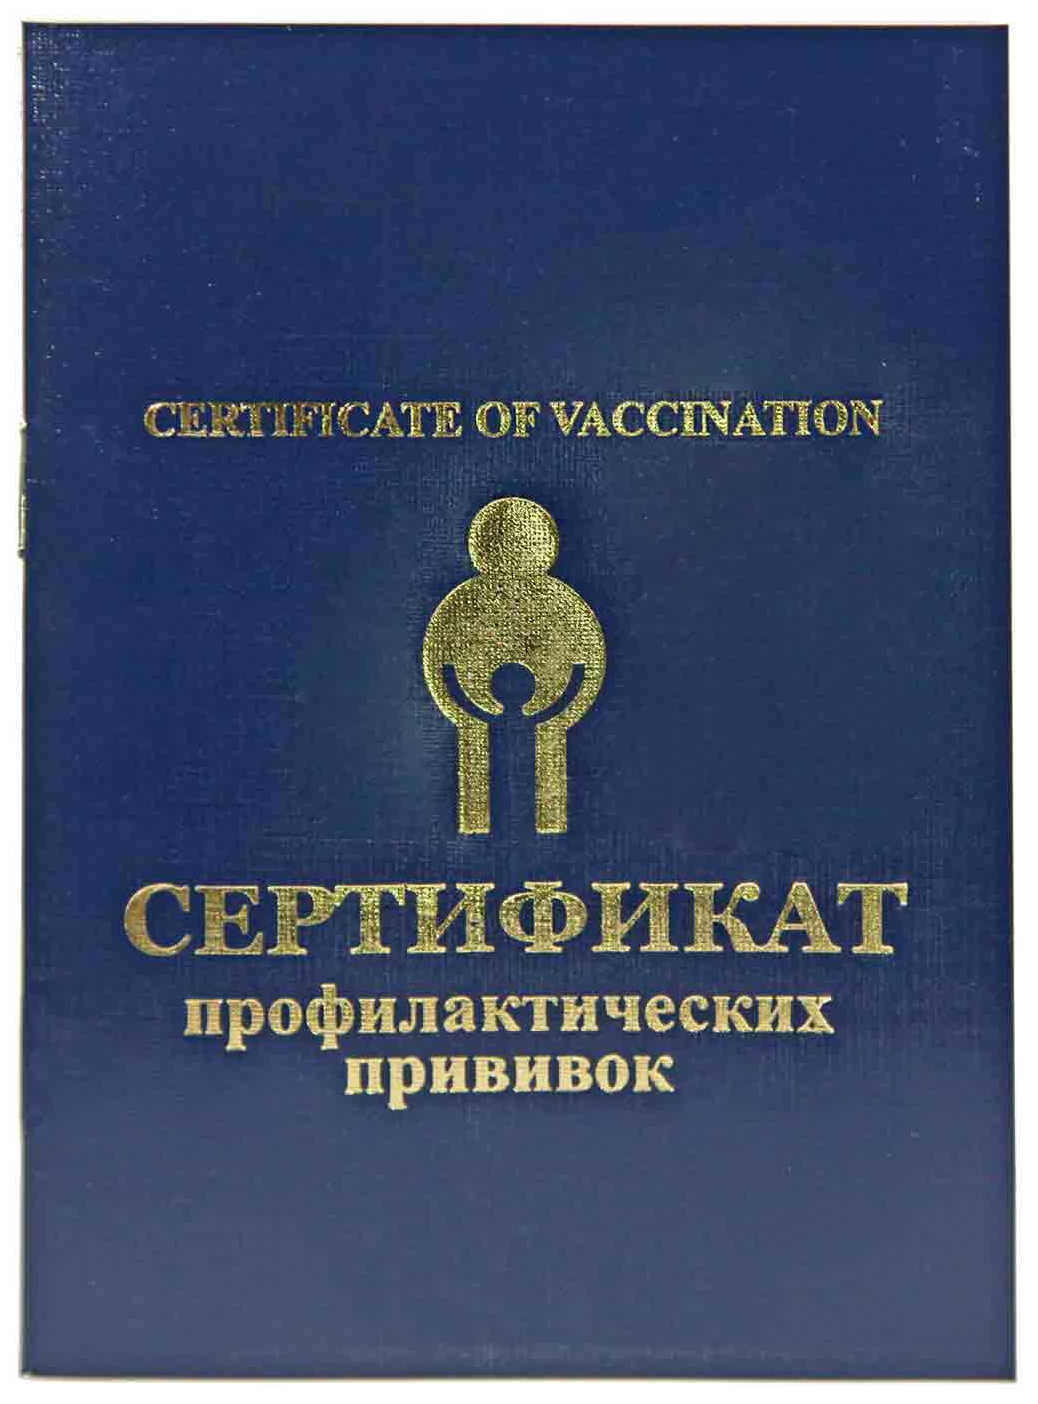 Прививочный сертификат